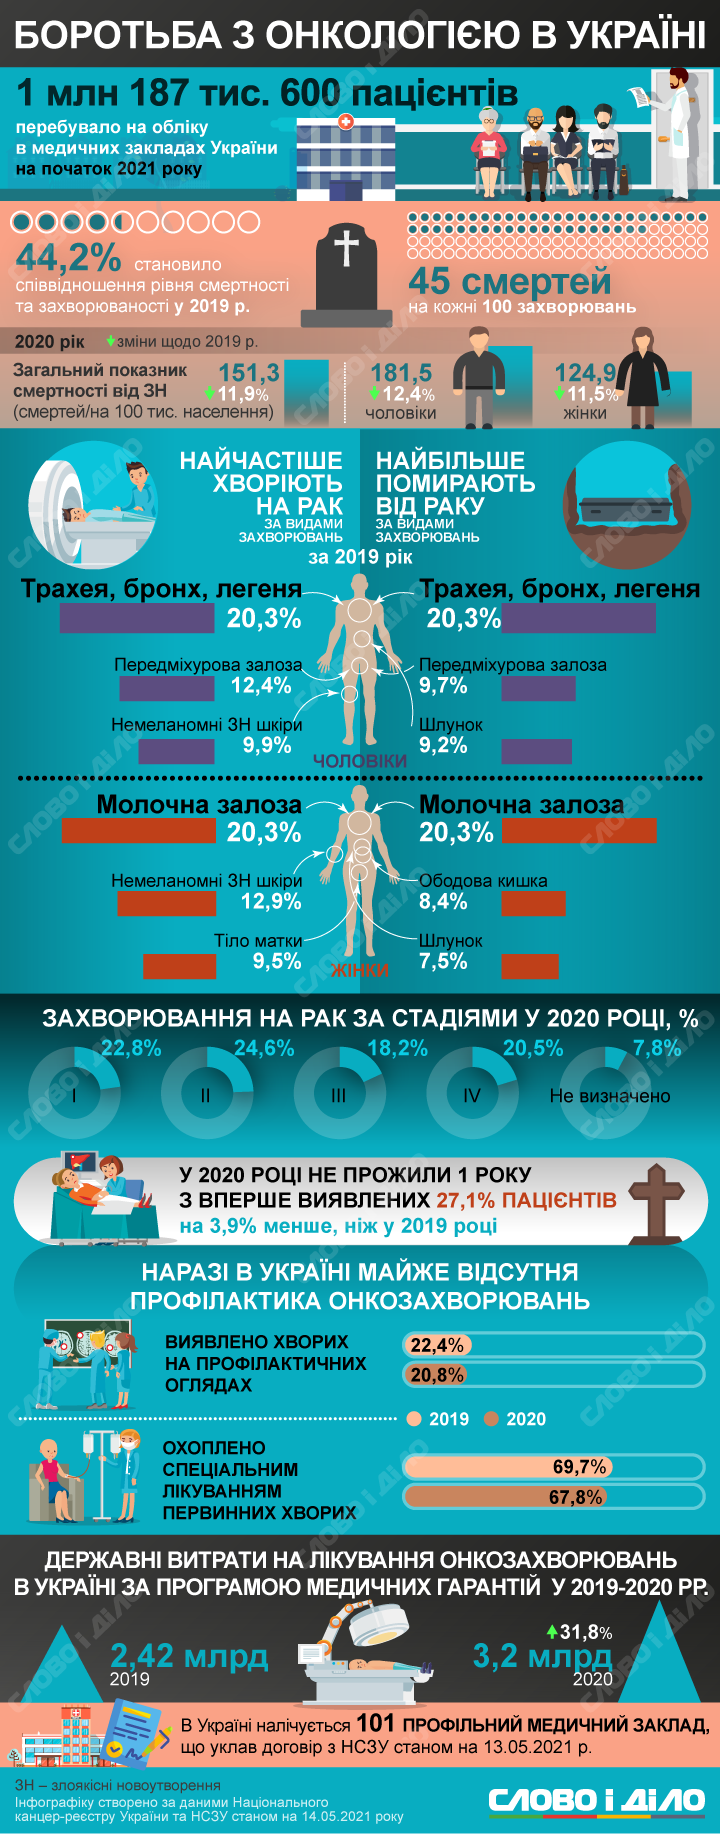 На початок 2021 року в Україні на обліку в медичних закладах перебуває 1 млн 187,6 тисяч пацієнтів з онкологічним захворюваннями.